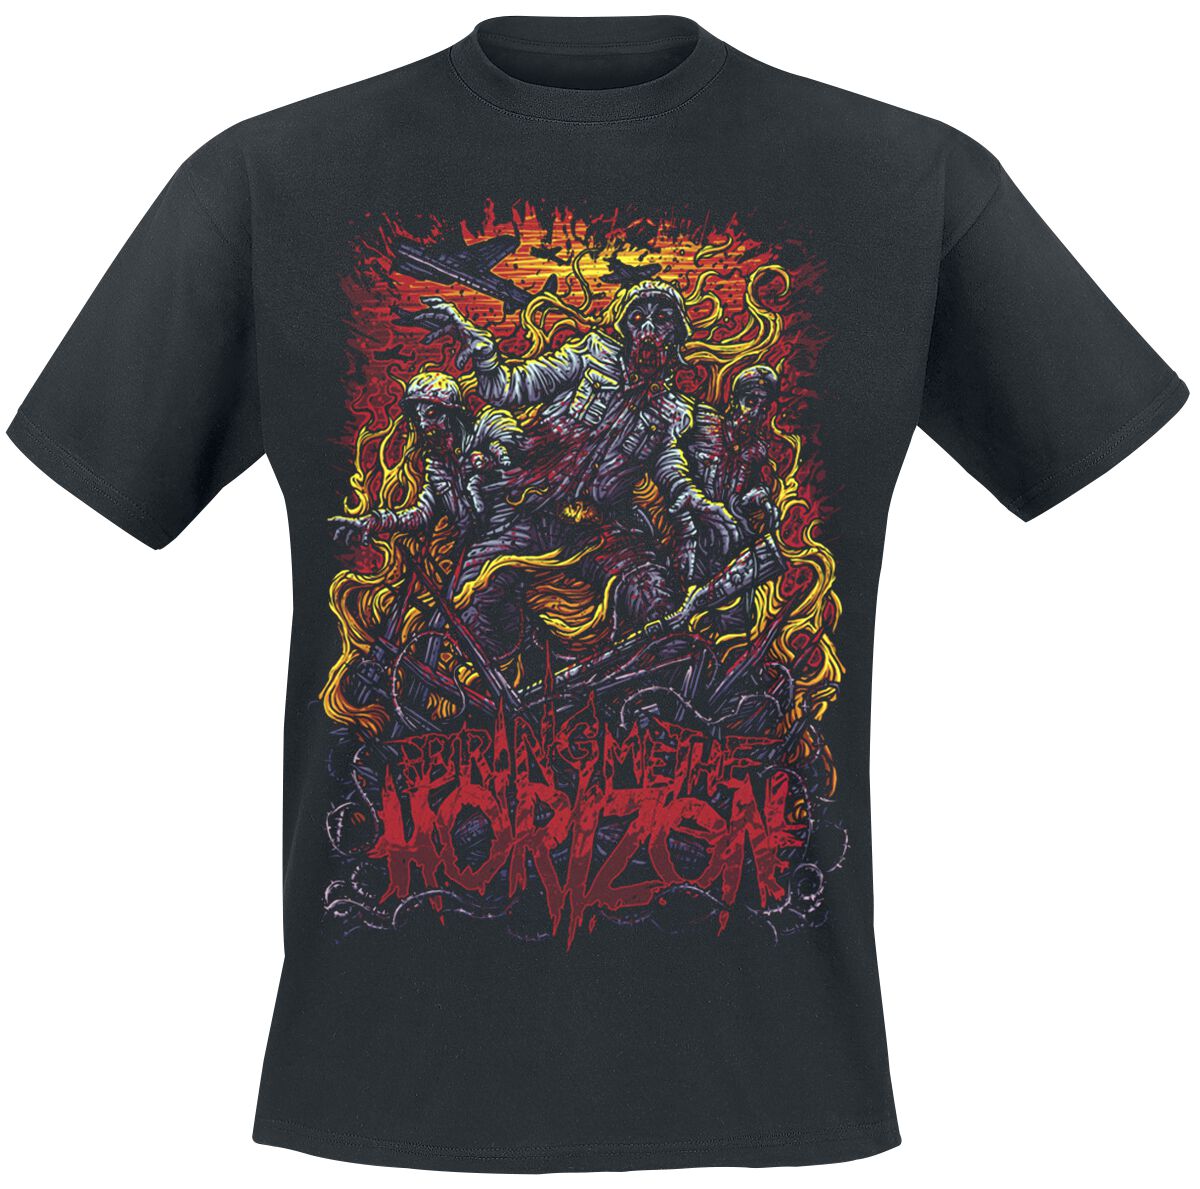 Bring Me The Horizon T-Shirt - Zombie Army - S bis XXL - für Männer - Größe S - schwarz  - Lizenziertes Merchandise!